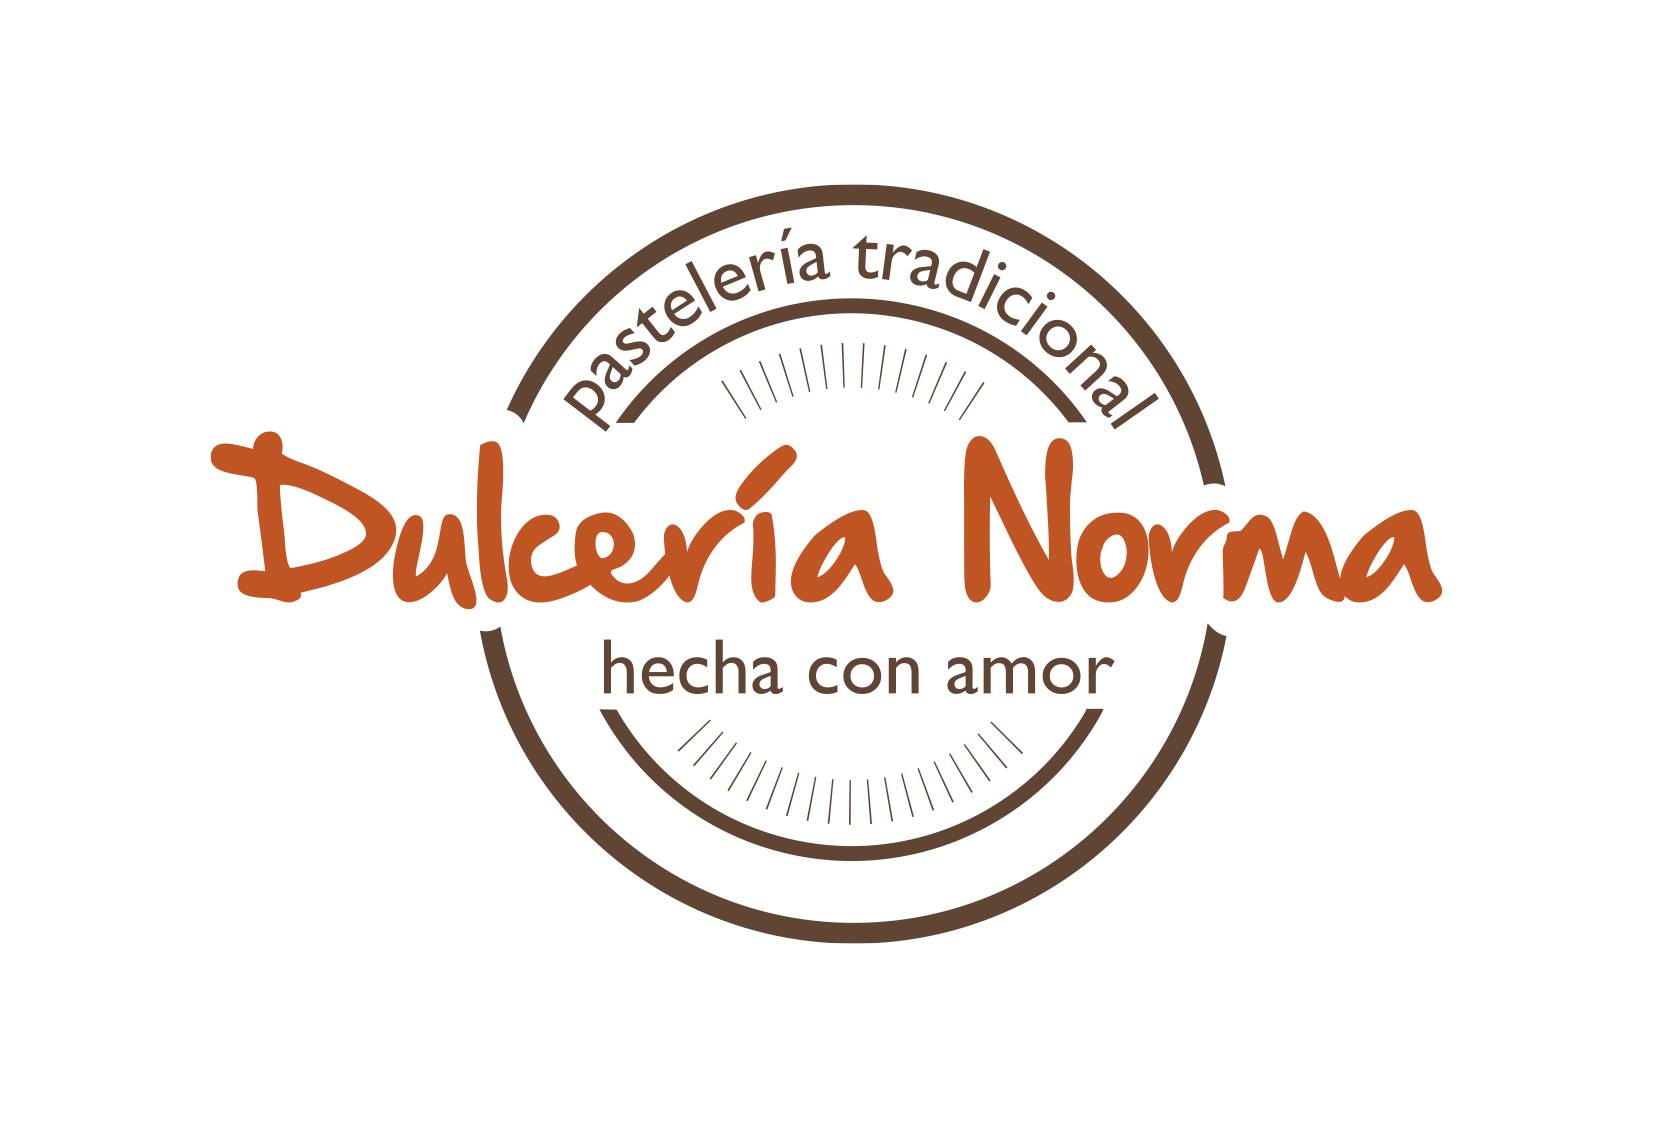 Dulceria Norma